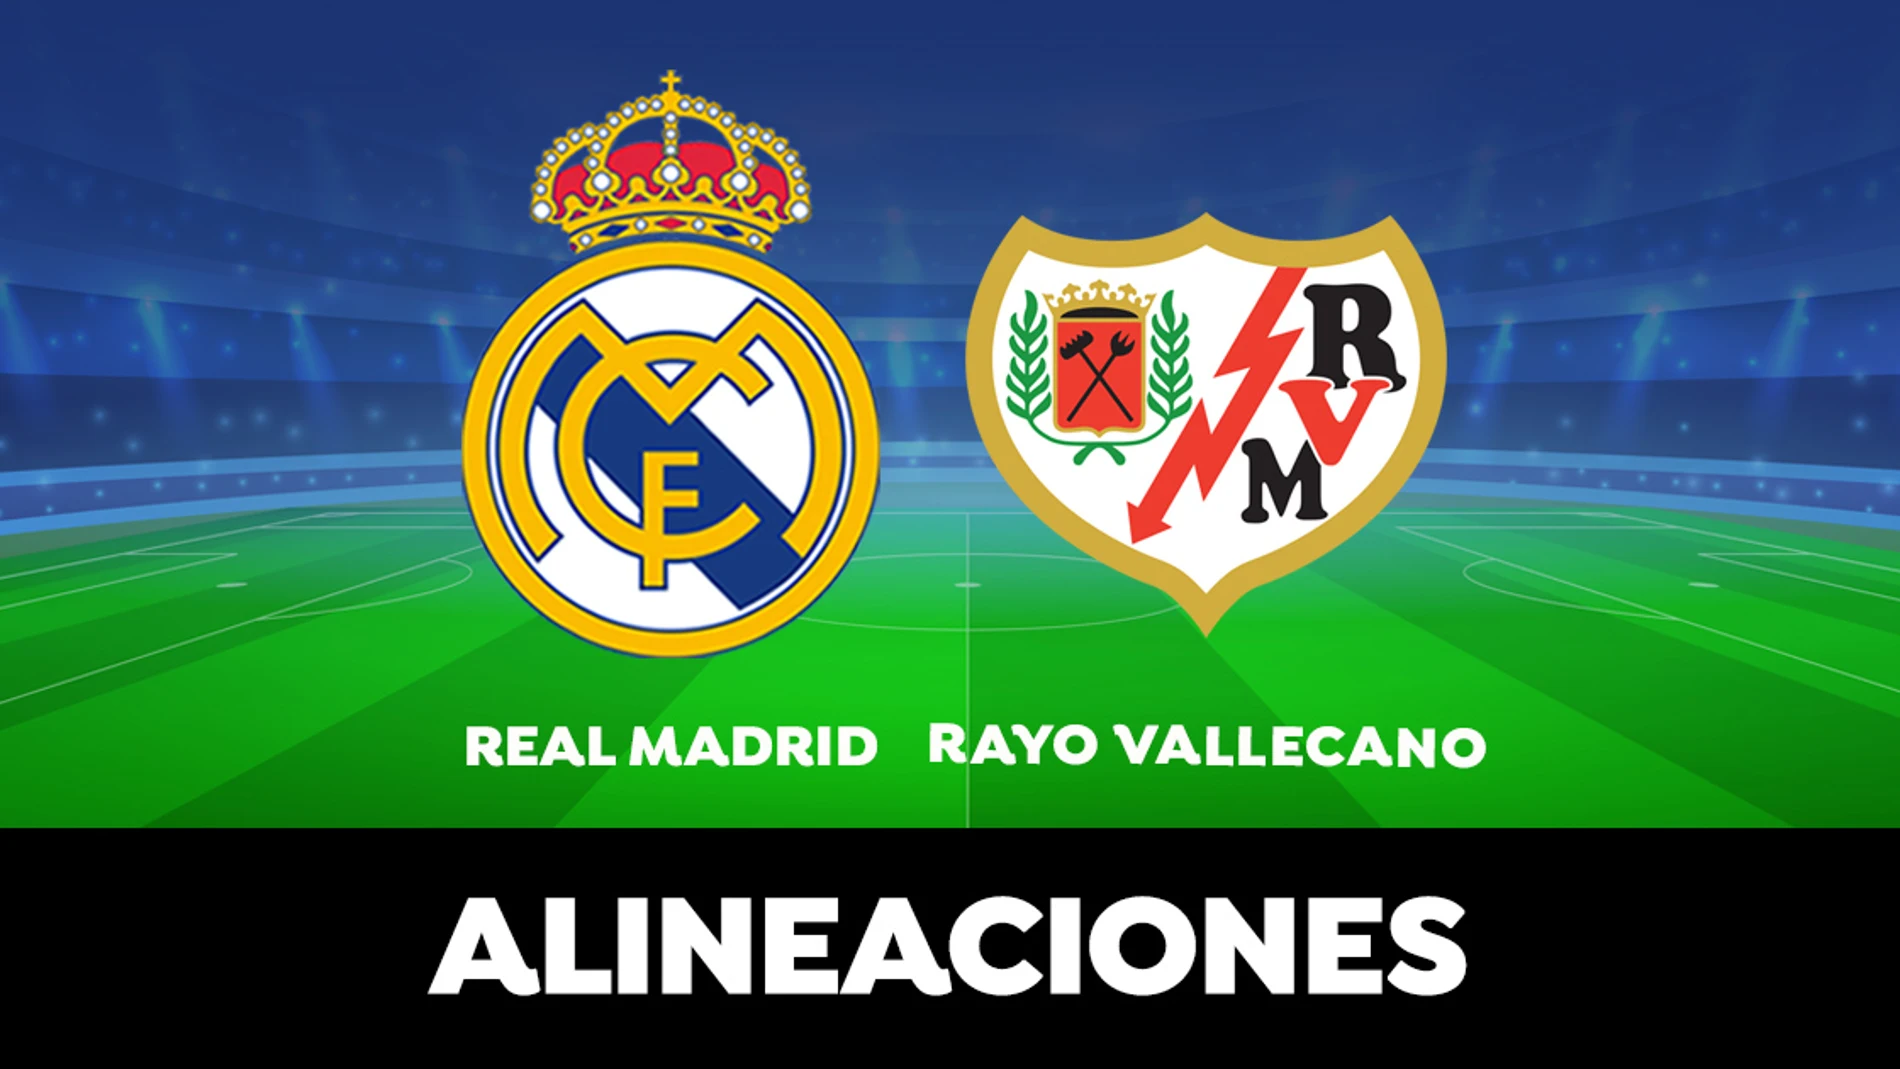 Alineación del Real Madrid hoy contra el Rayo Vallecano en el partido de la Liga Santander